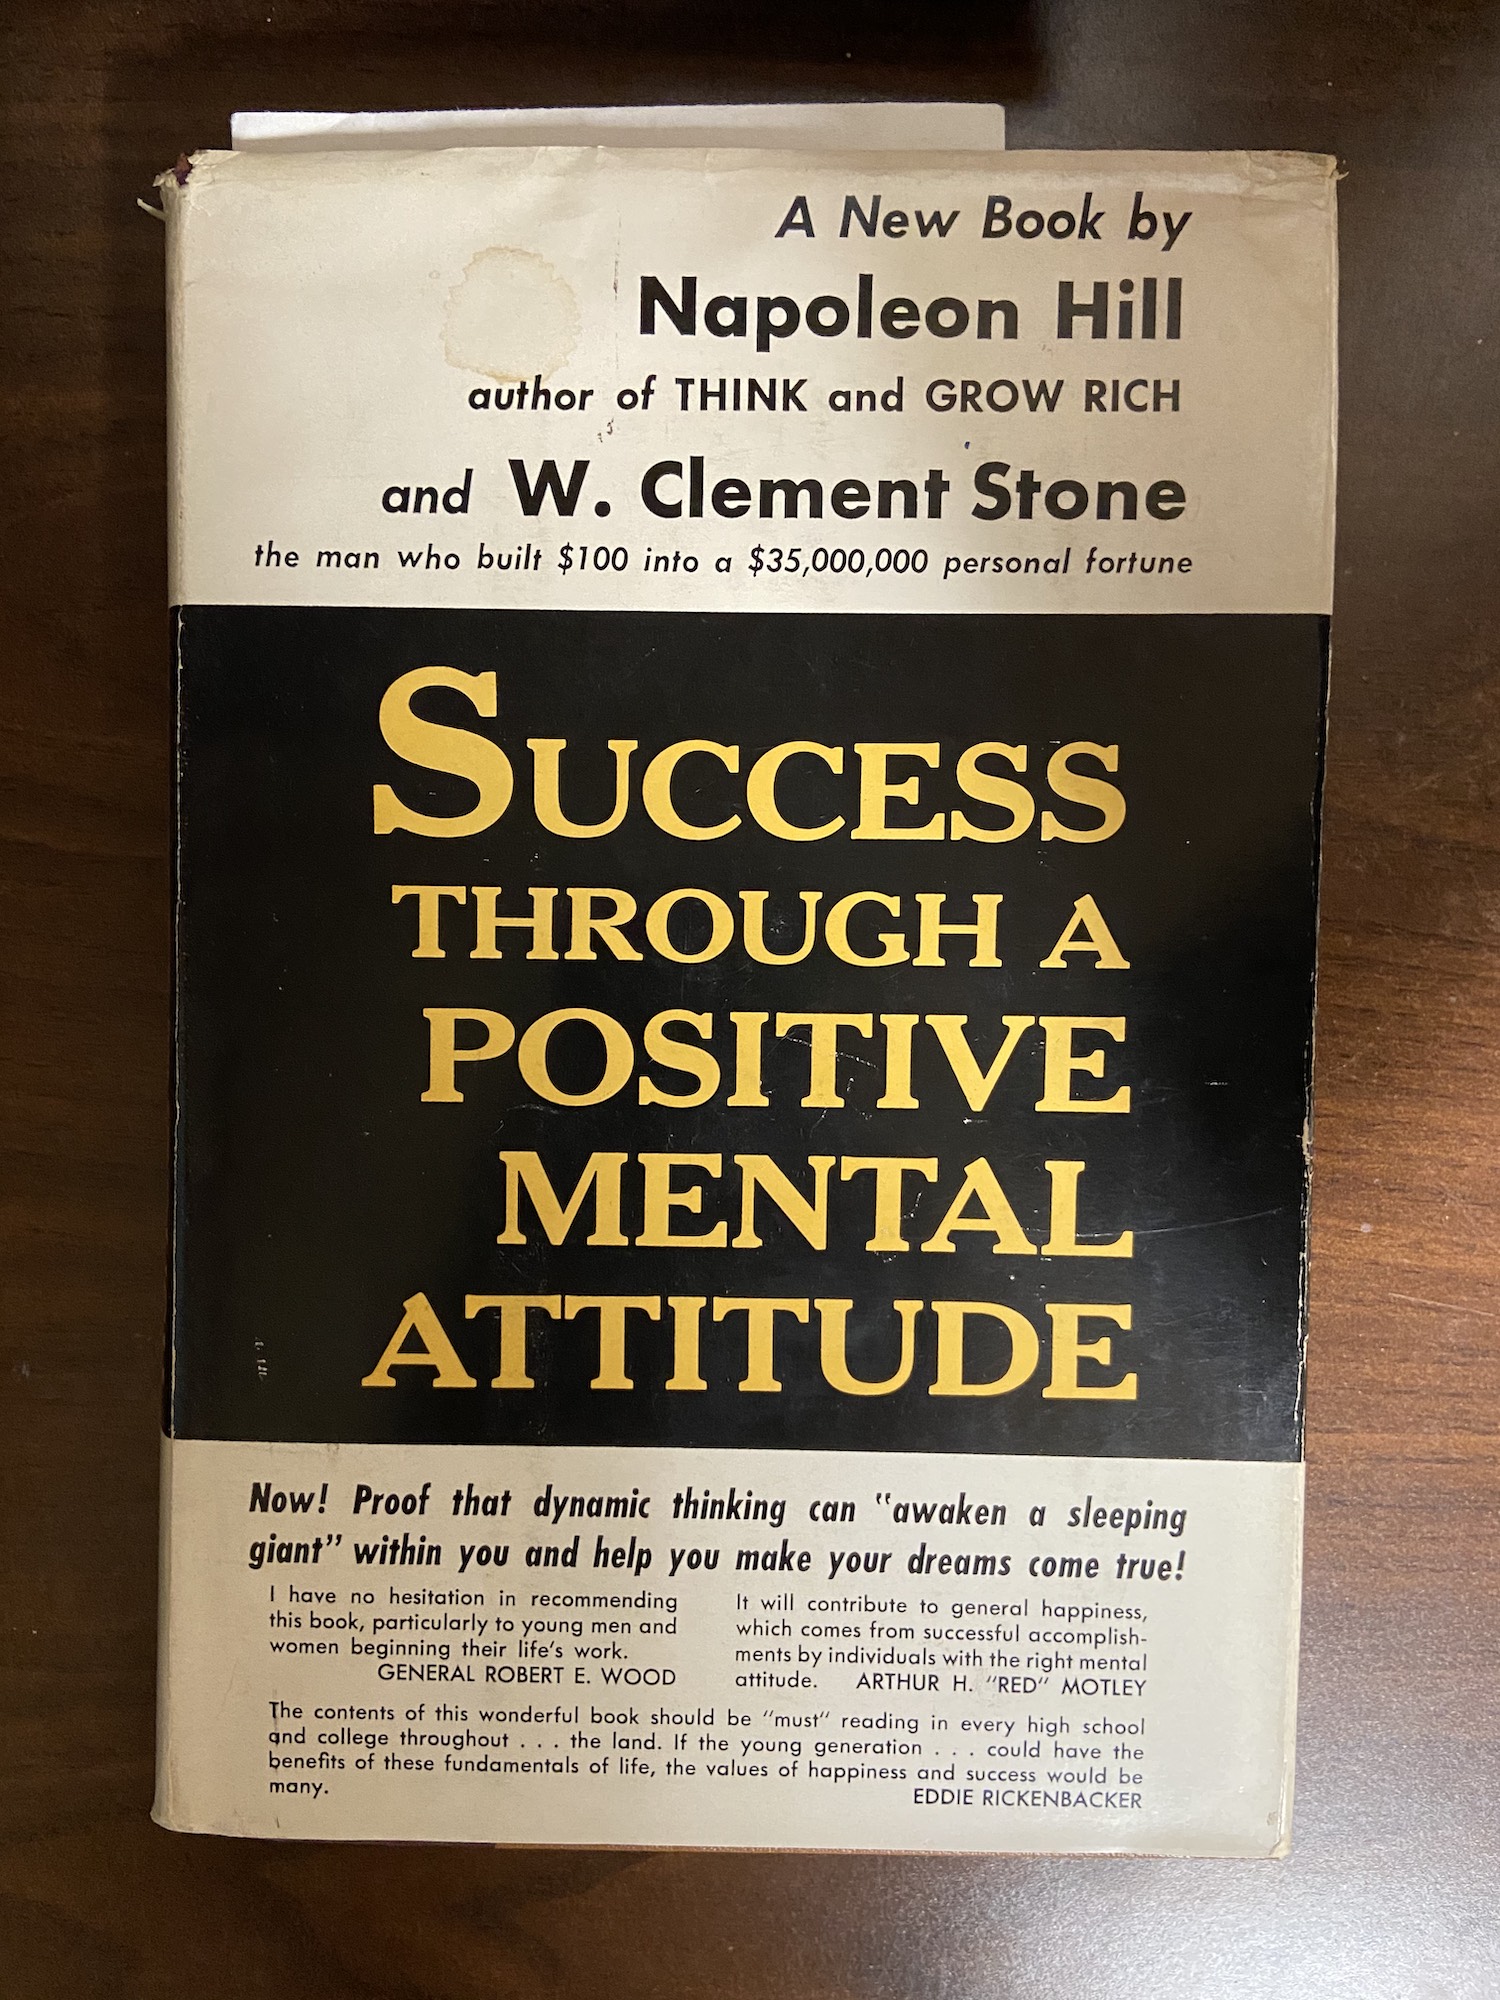 The cover of Success Through a Positive Mental Attitude.